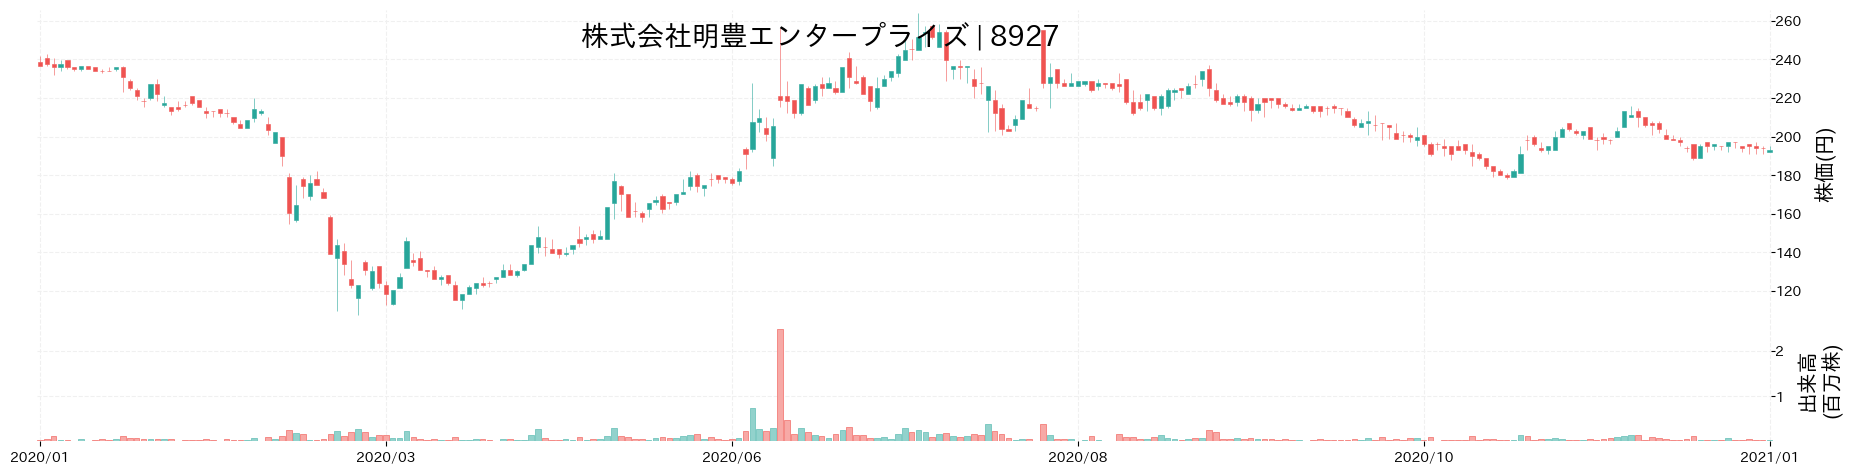 明豊エンタープライズの株価推移(2020)